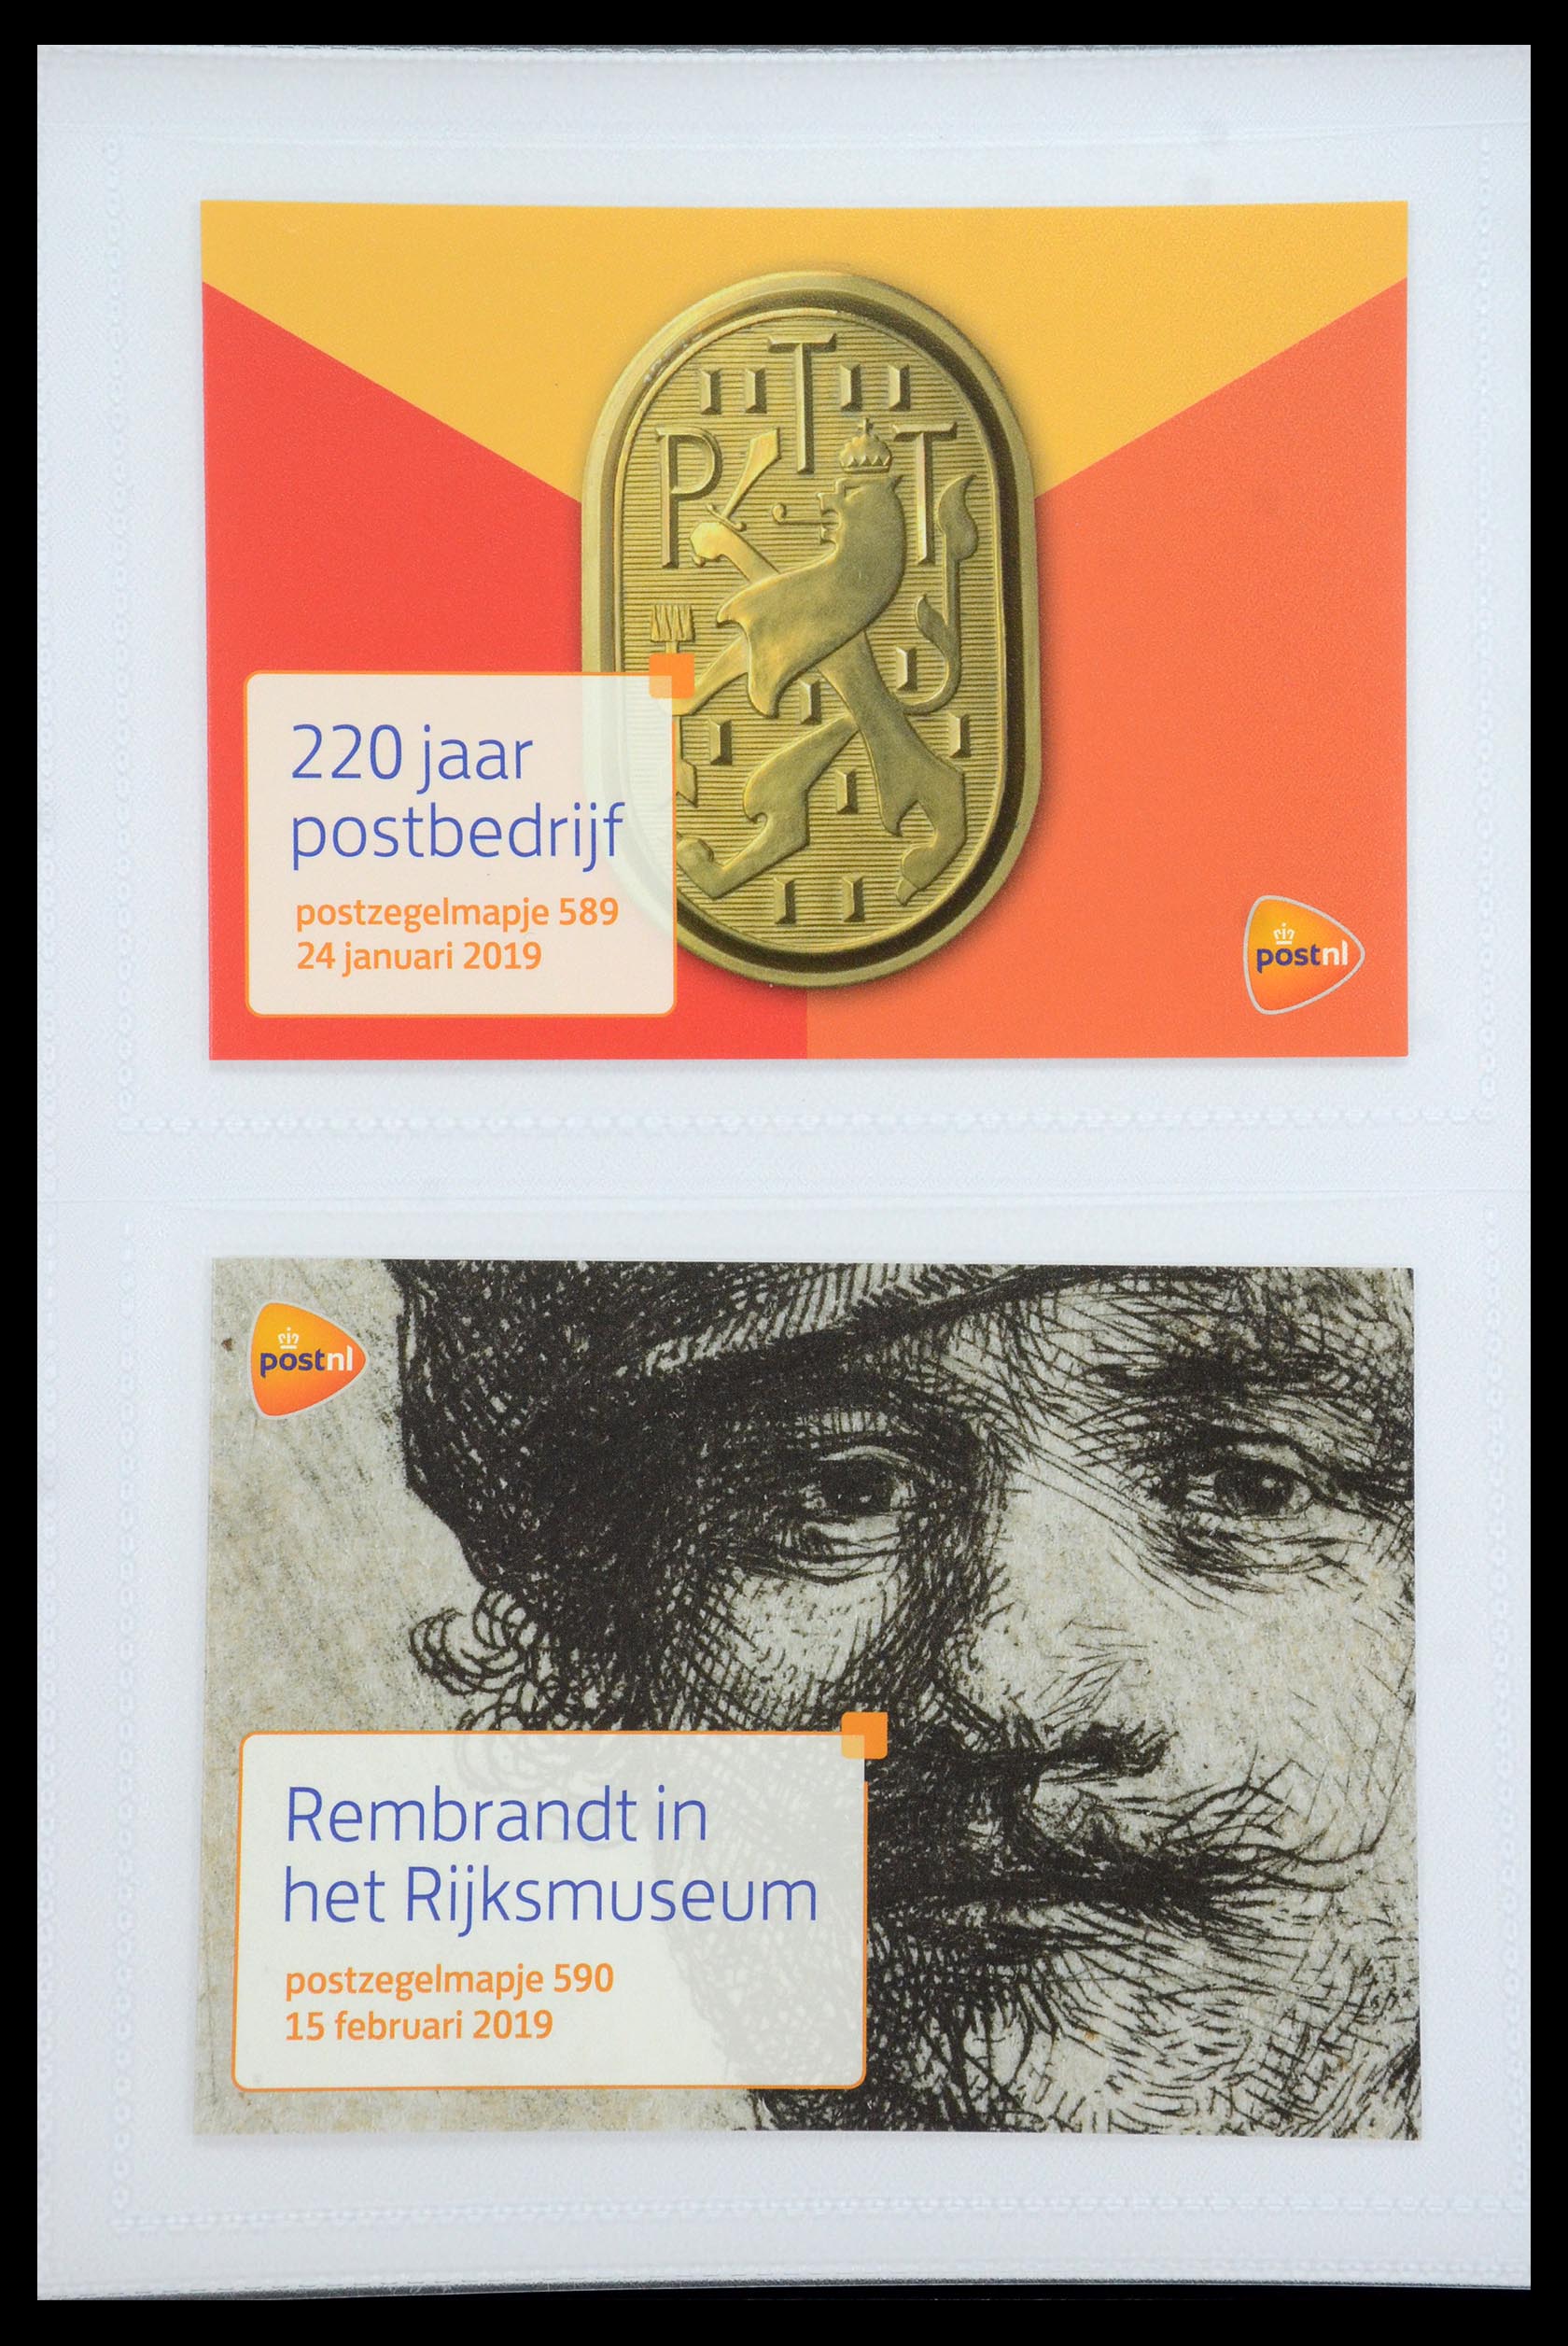 35947 356 - Stamp Collection 35947 Netherlands PTT presentation packs 1982-2019!